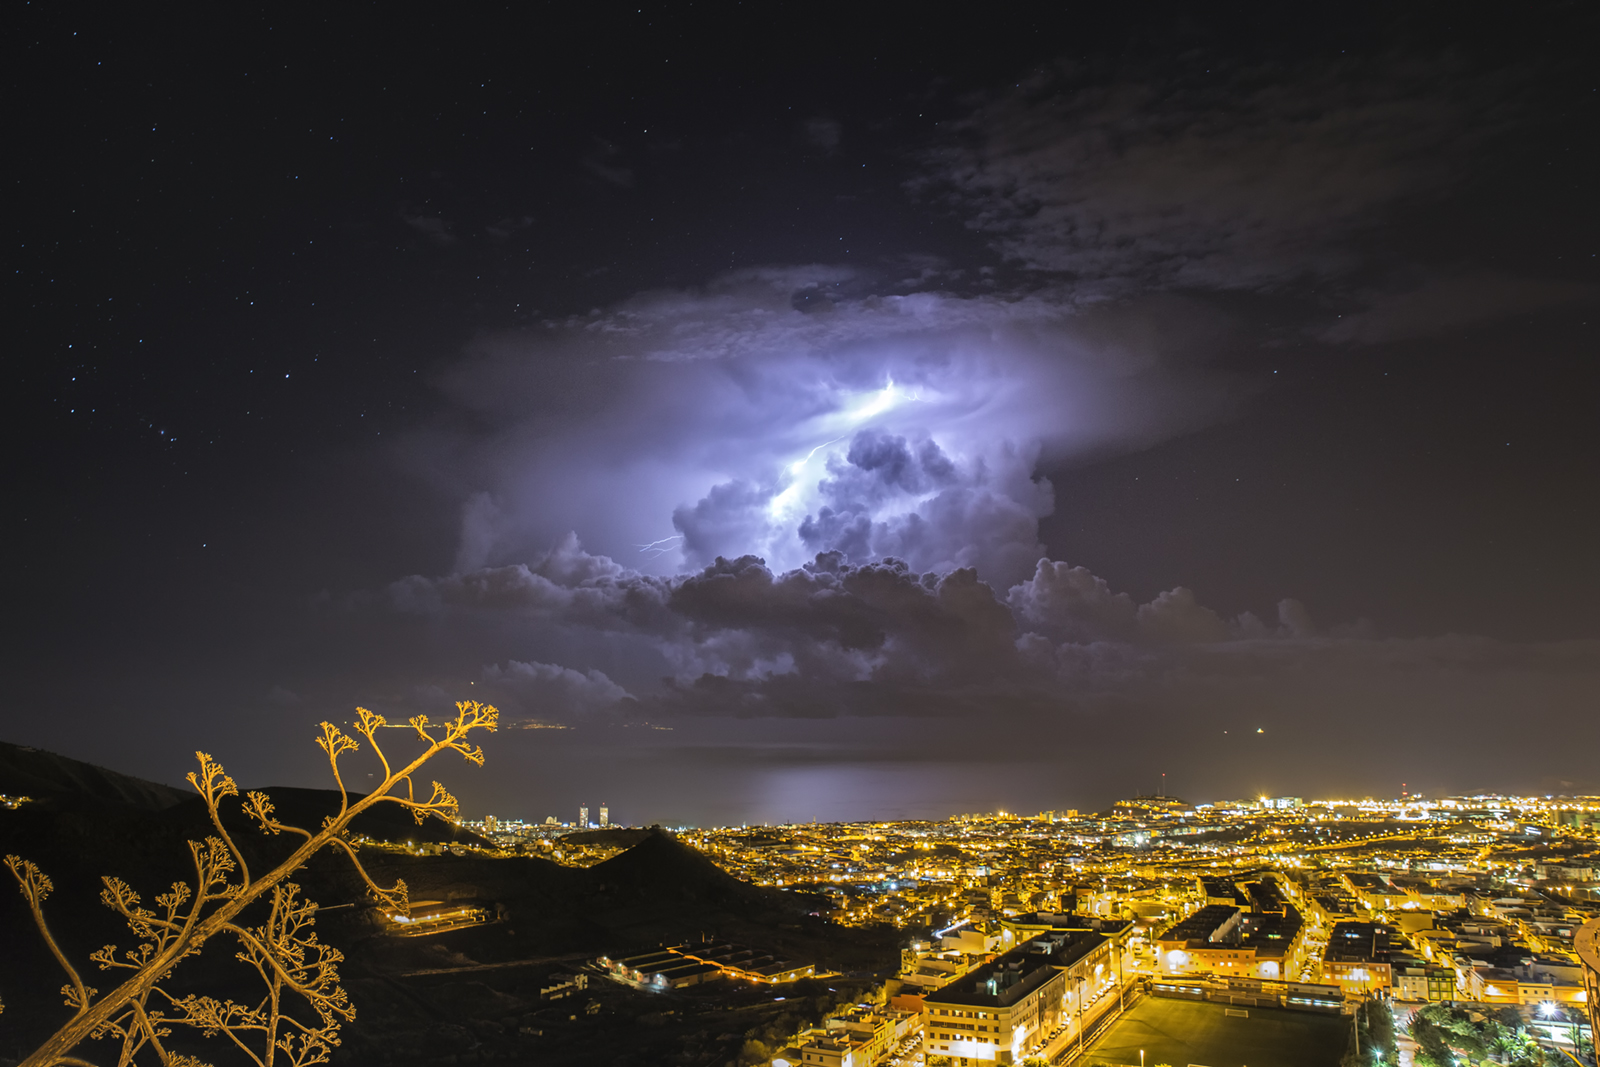 Tormentas en Canarias - Noviembre 2016 4